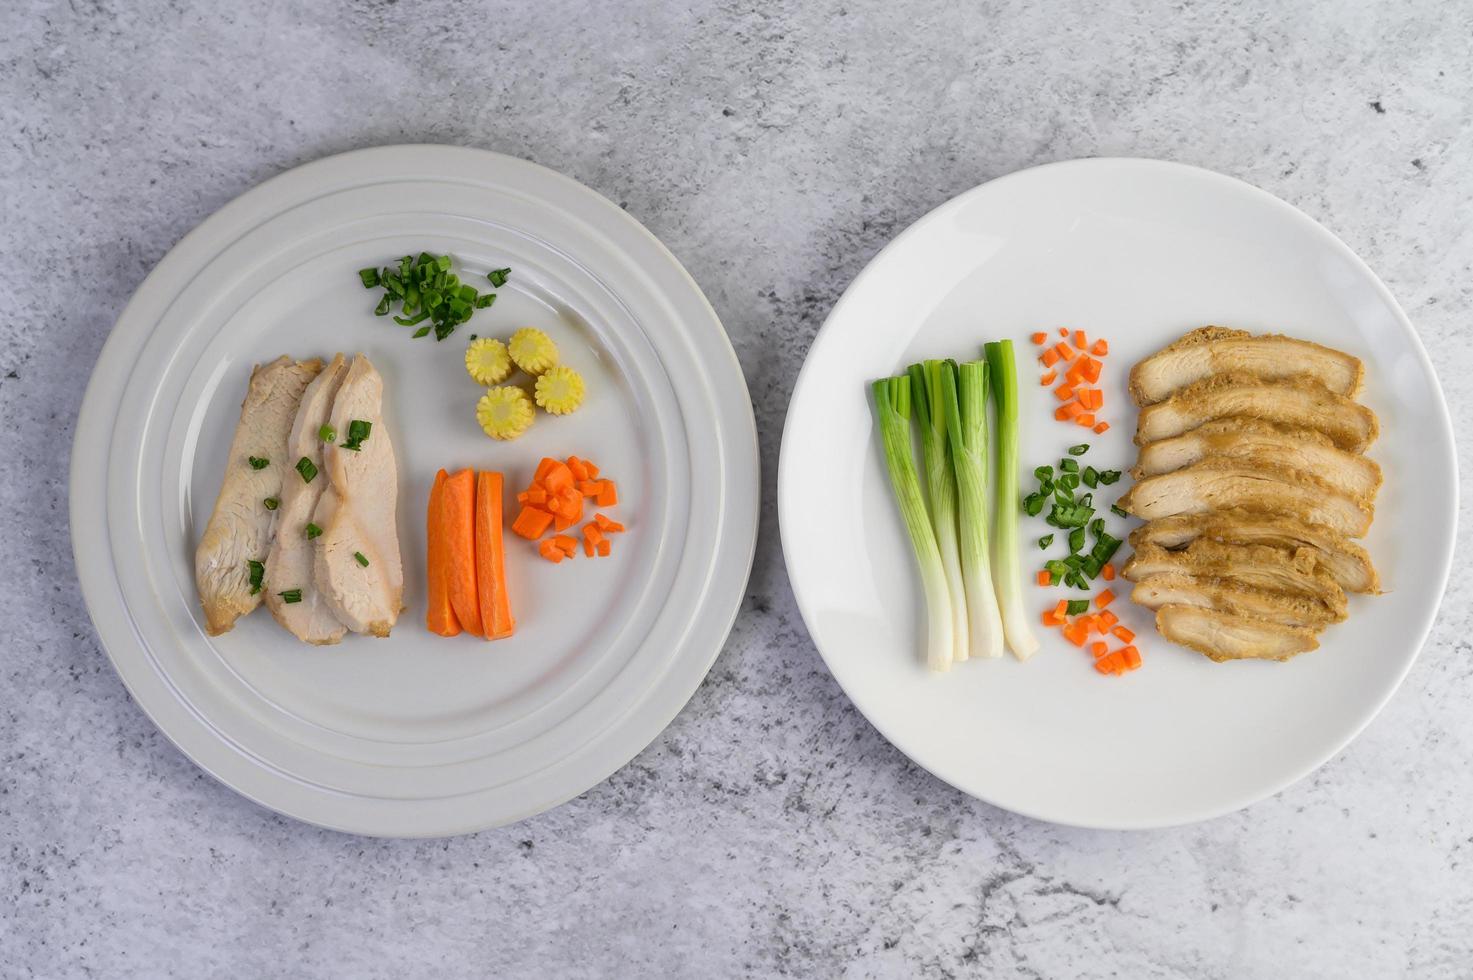 poitrine de poulet cuite à la vapeur sur une assiette blanche avec oignons de printemps et carottes photo